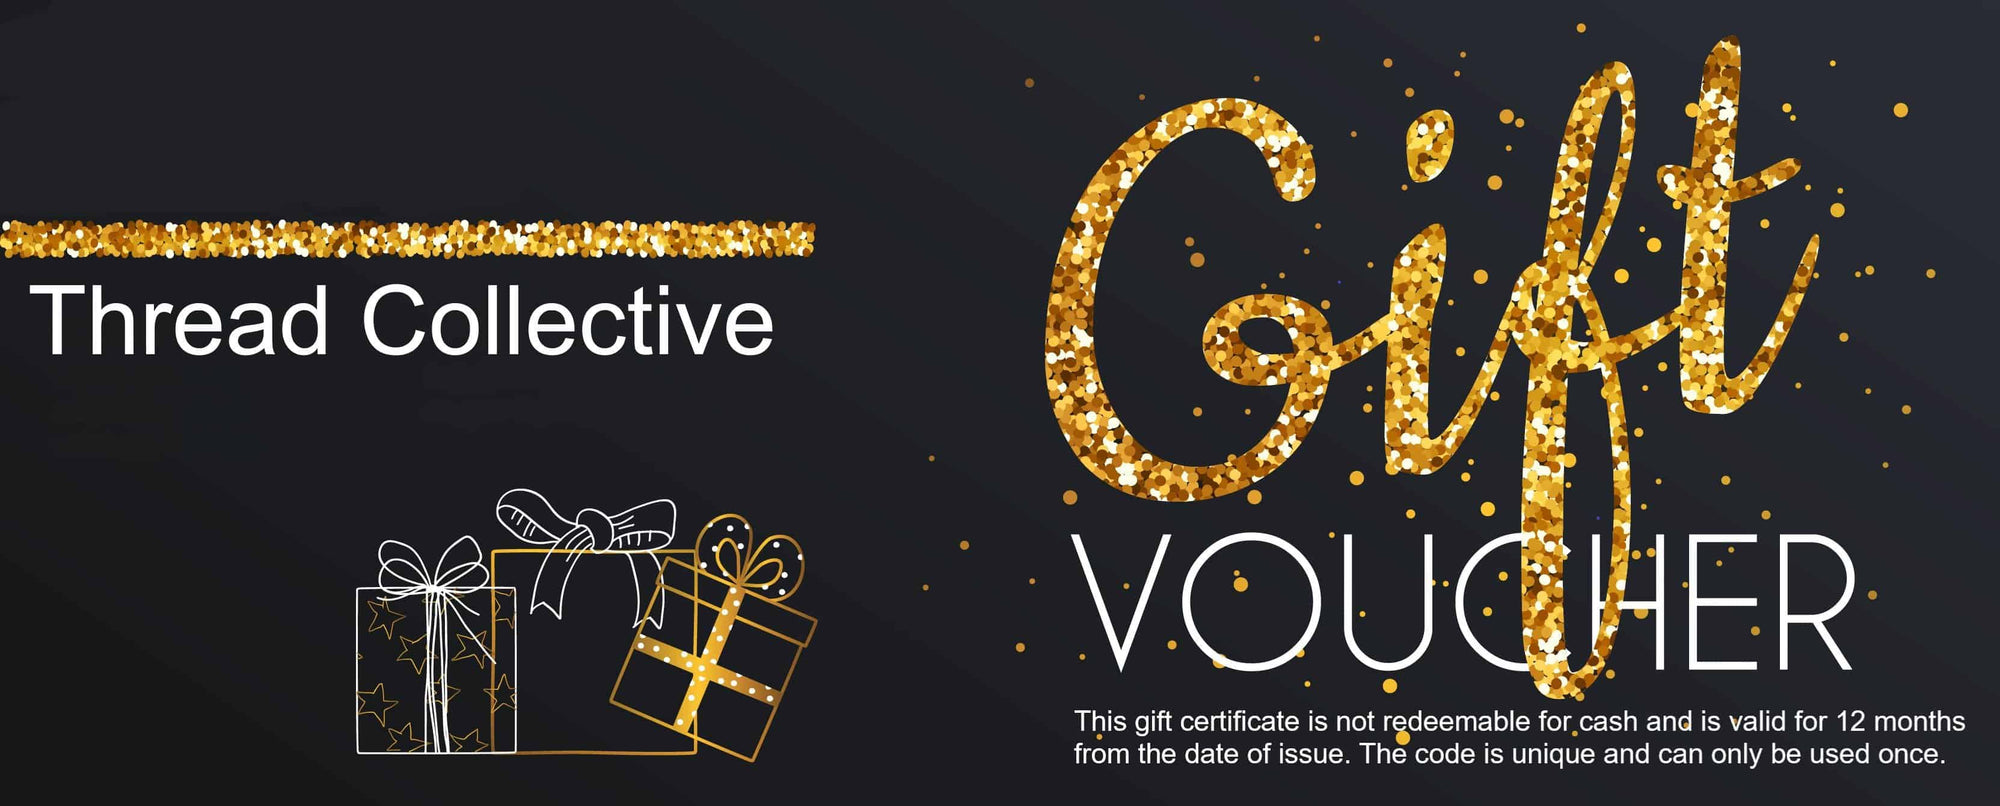 Thread Collective e-card gift voucher